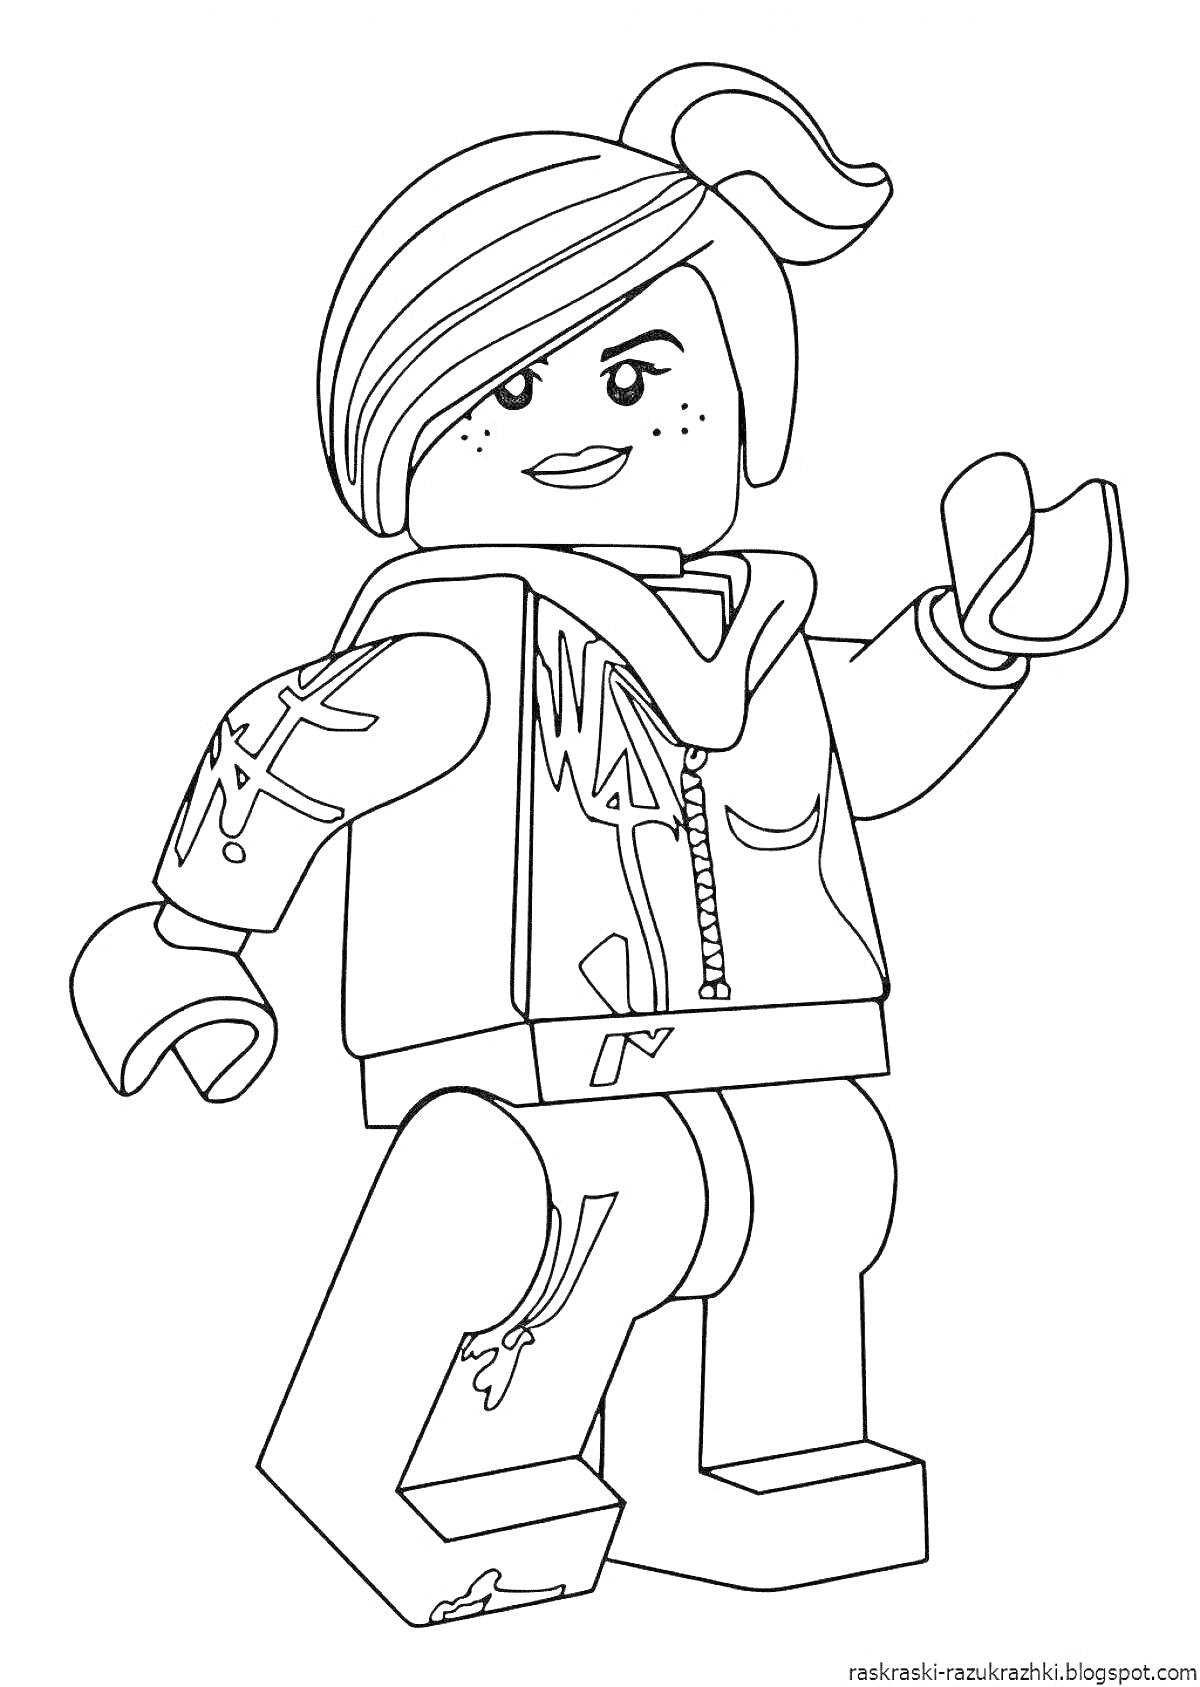 Раскраска Девушка-аватар из Roblox с прической в хвост, одетая в куртку с капюшоном и джинсы с прорехами